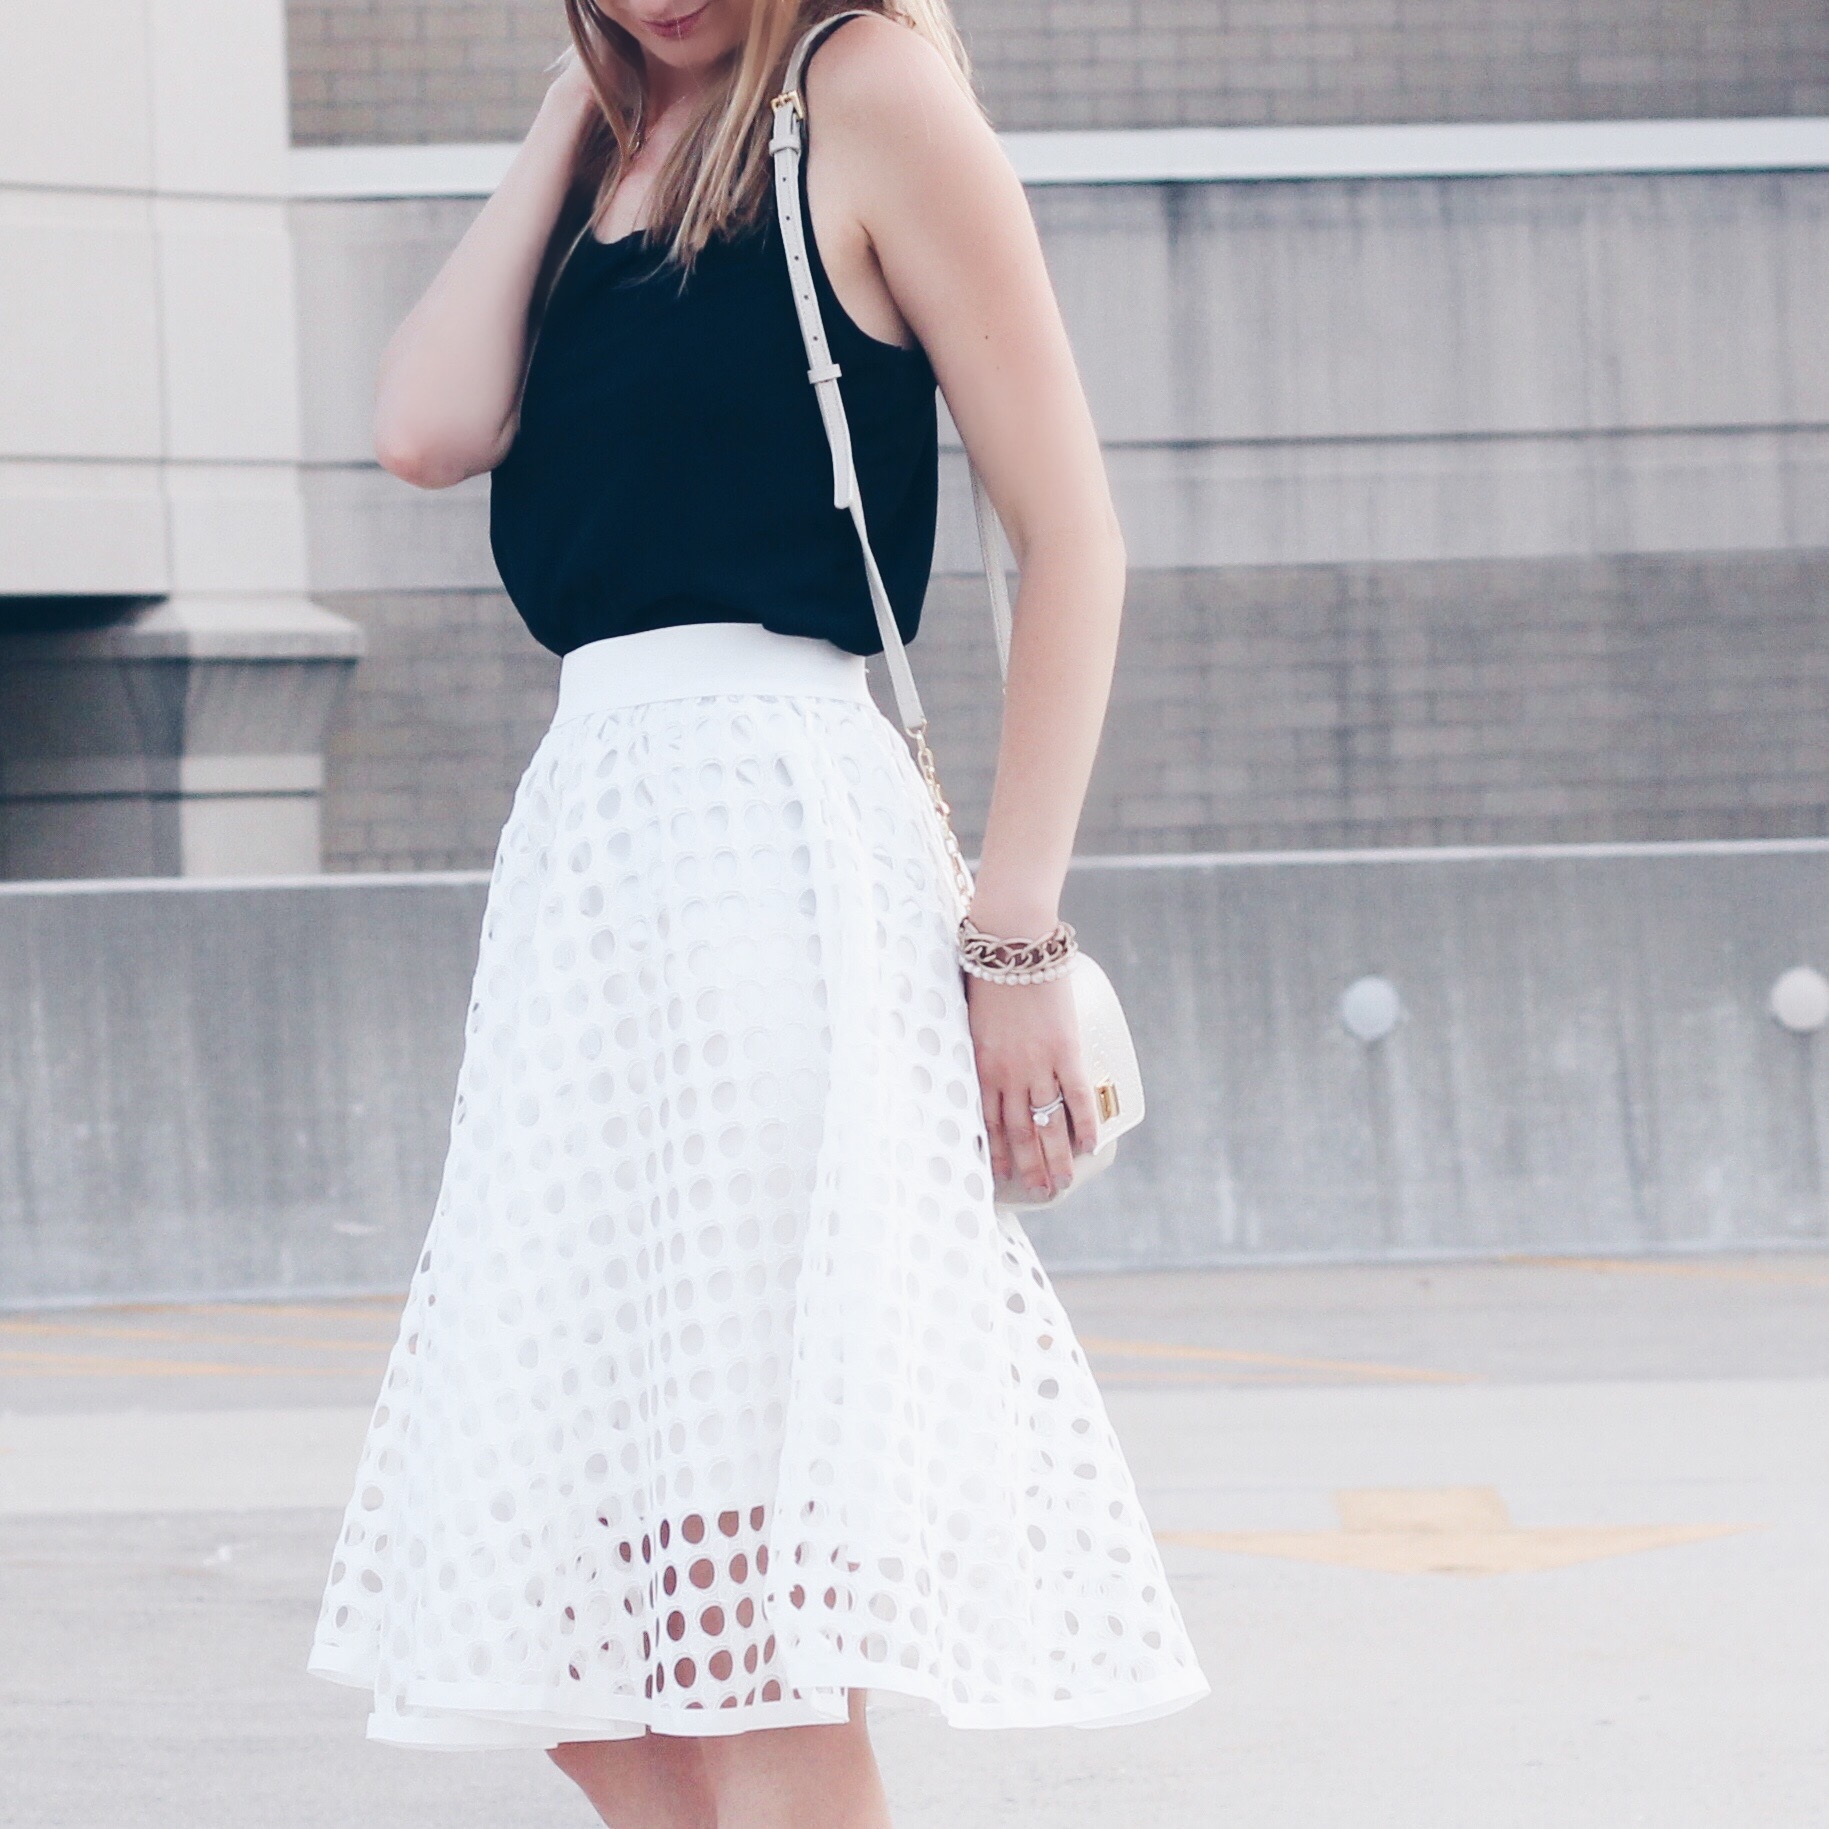 $20 white eyelet midi party skirt outfit - Pinteresting Plans